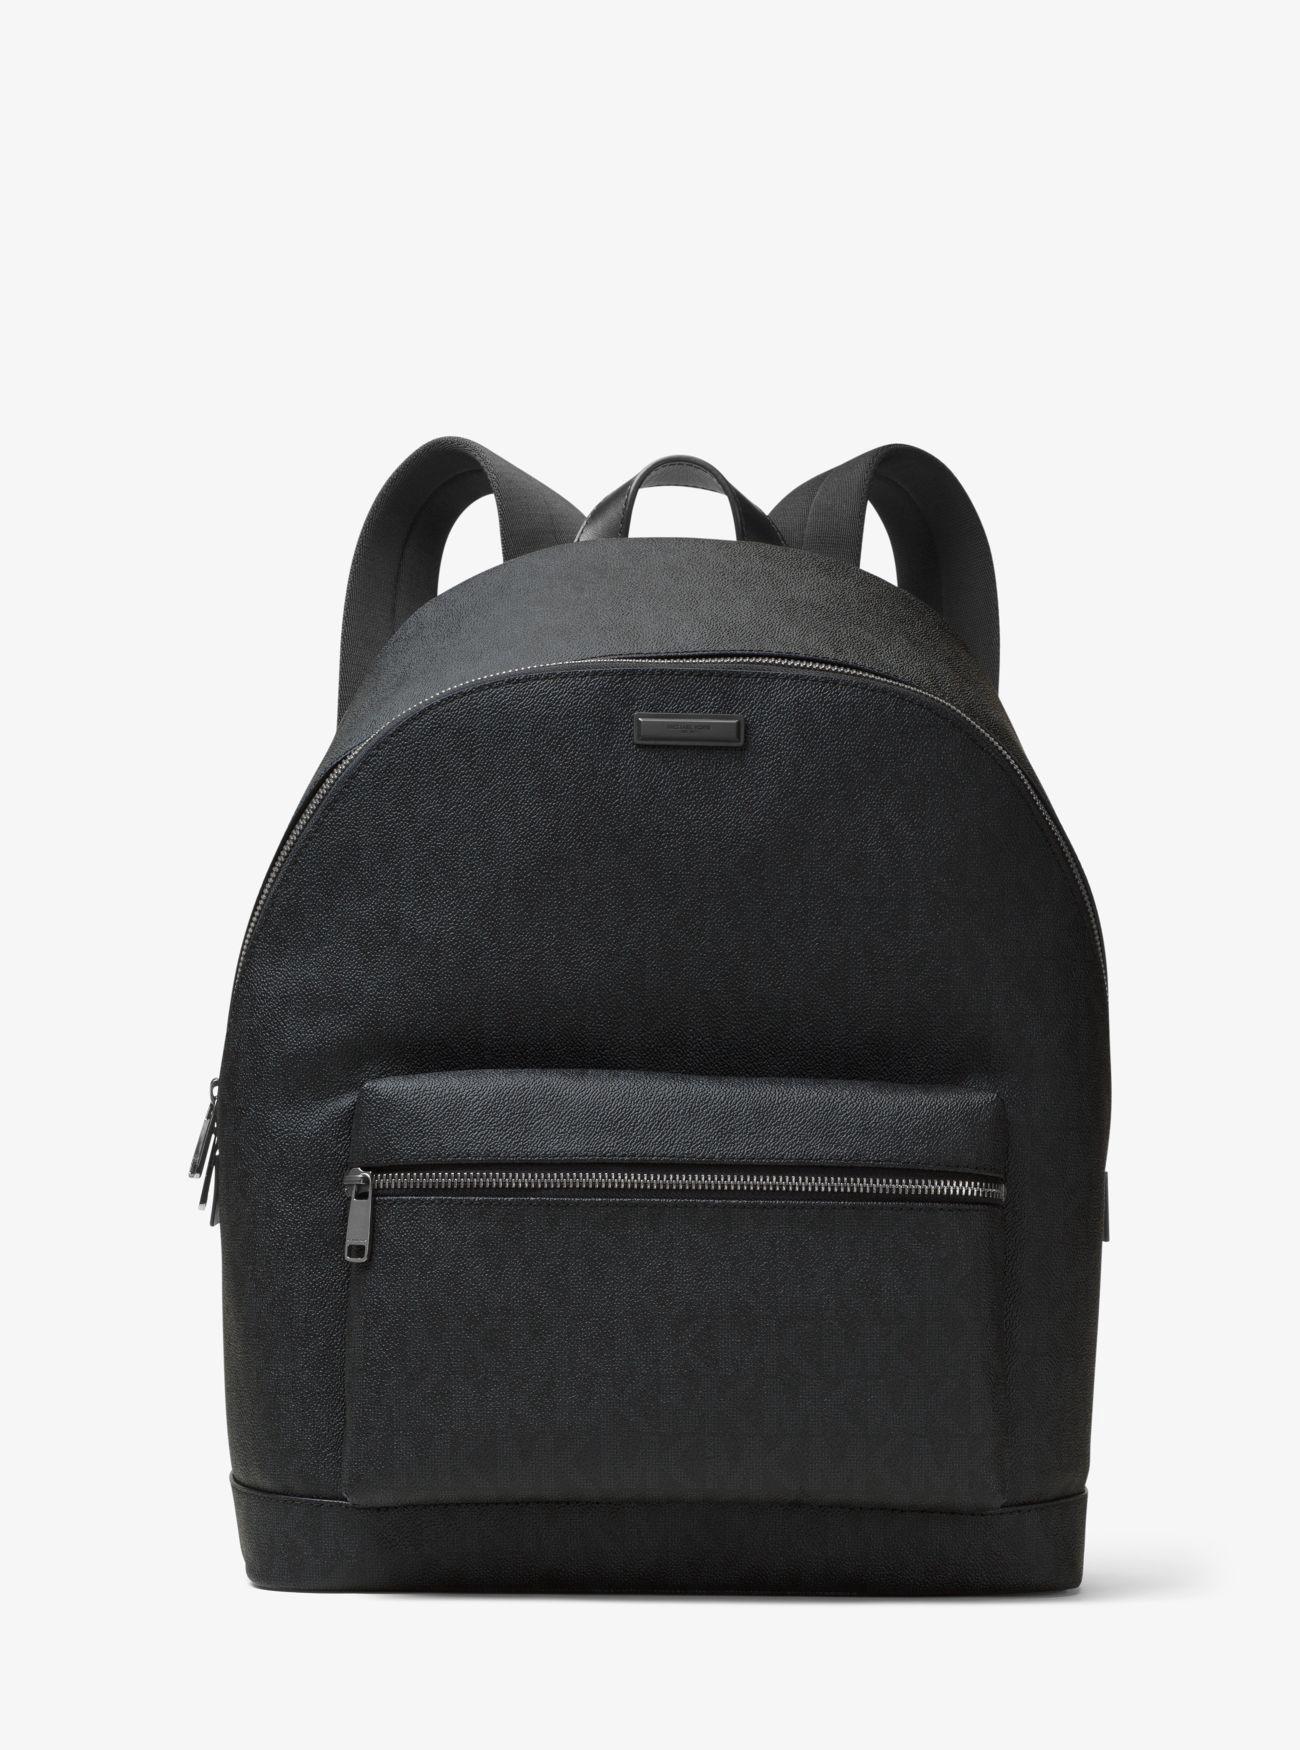 Michael Kors Jet Set Logo Backpack In Black | ModeSens